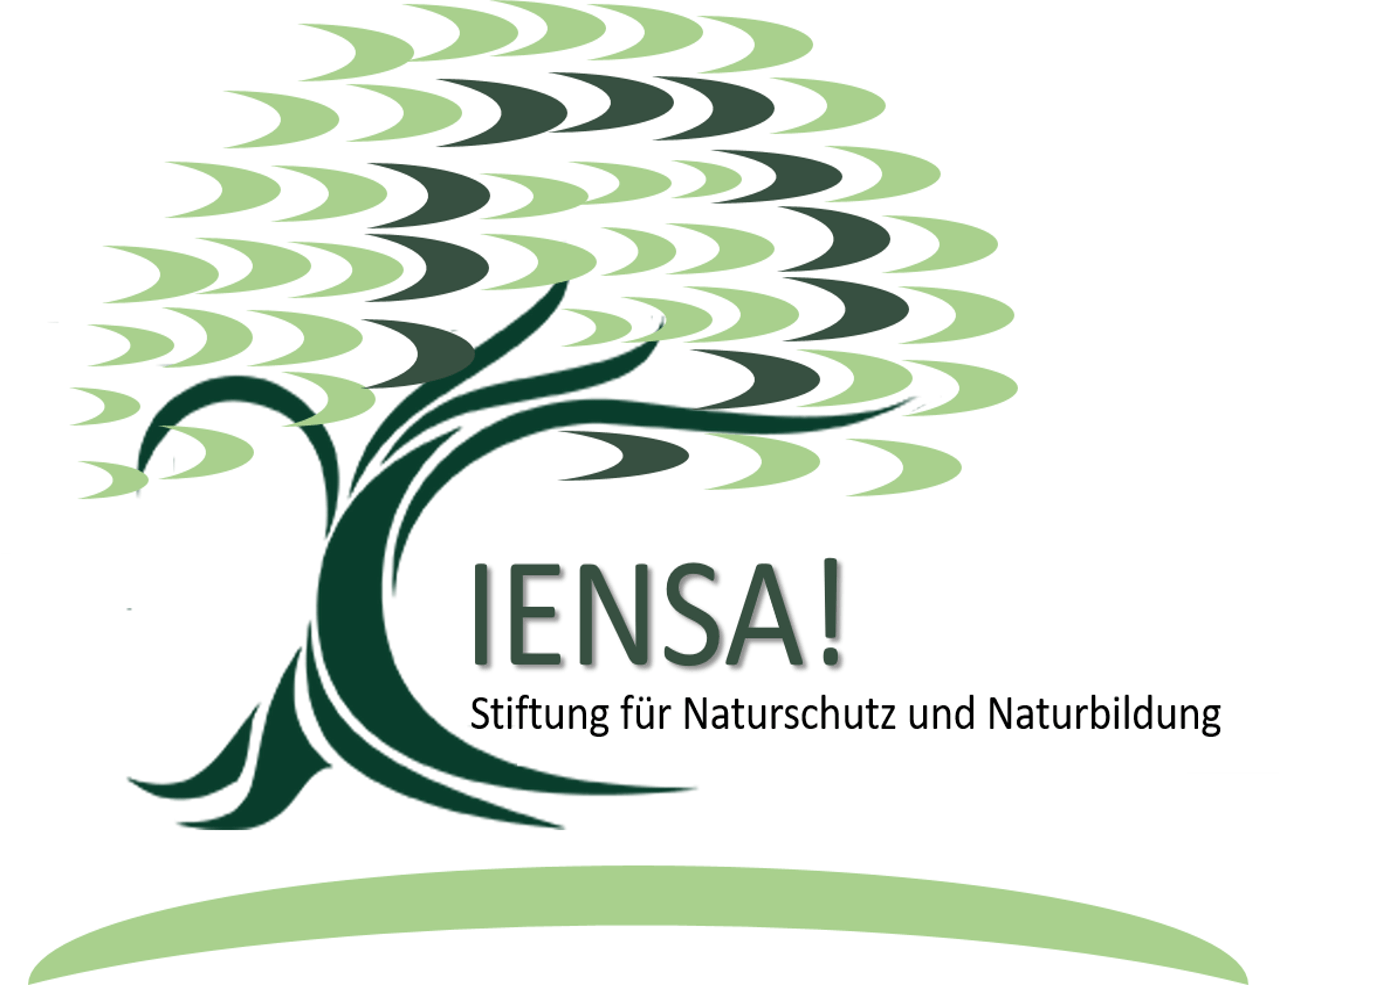 PIENSA! Stiftung für Naturschutz und Naturbildung